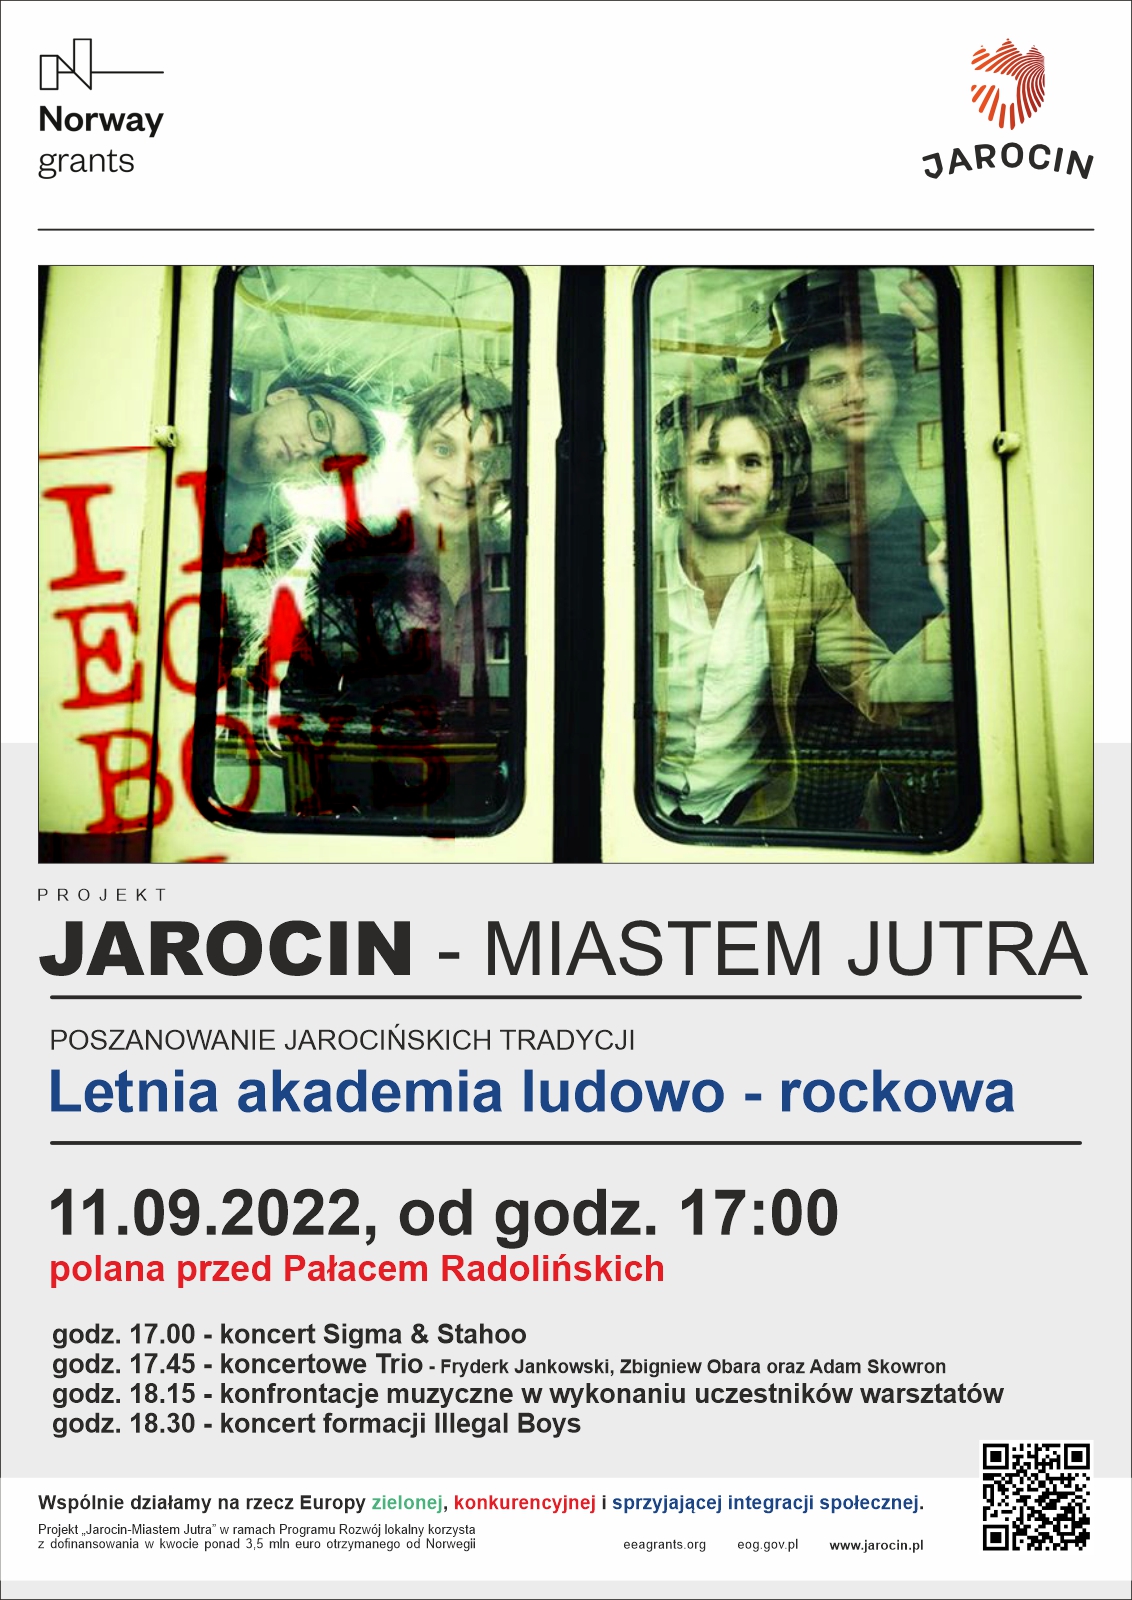 “Letnia akademia ludowo-rockowa”. Koncert 11.09.2022 r. Polecamy! Zapraszamy!